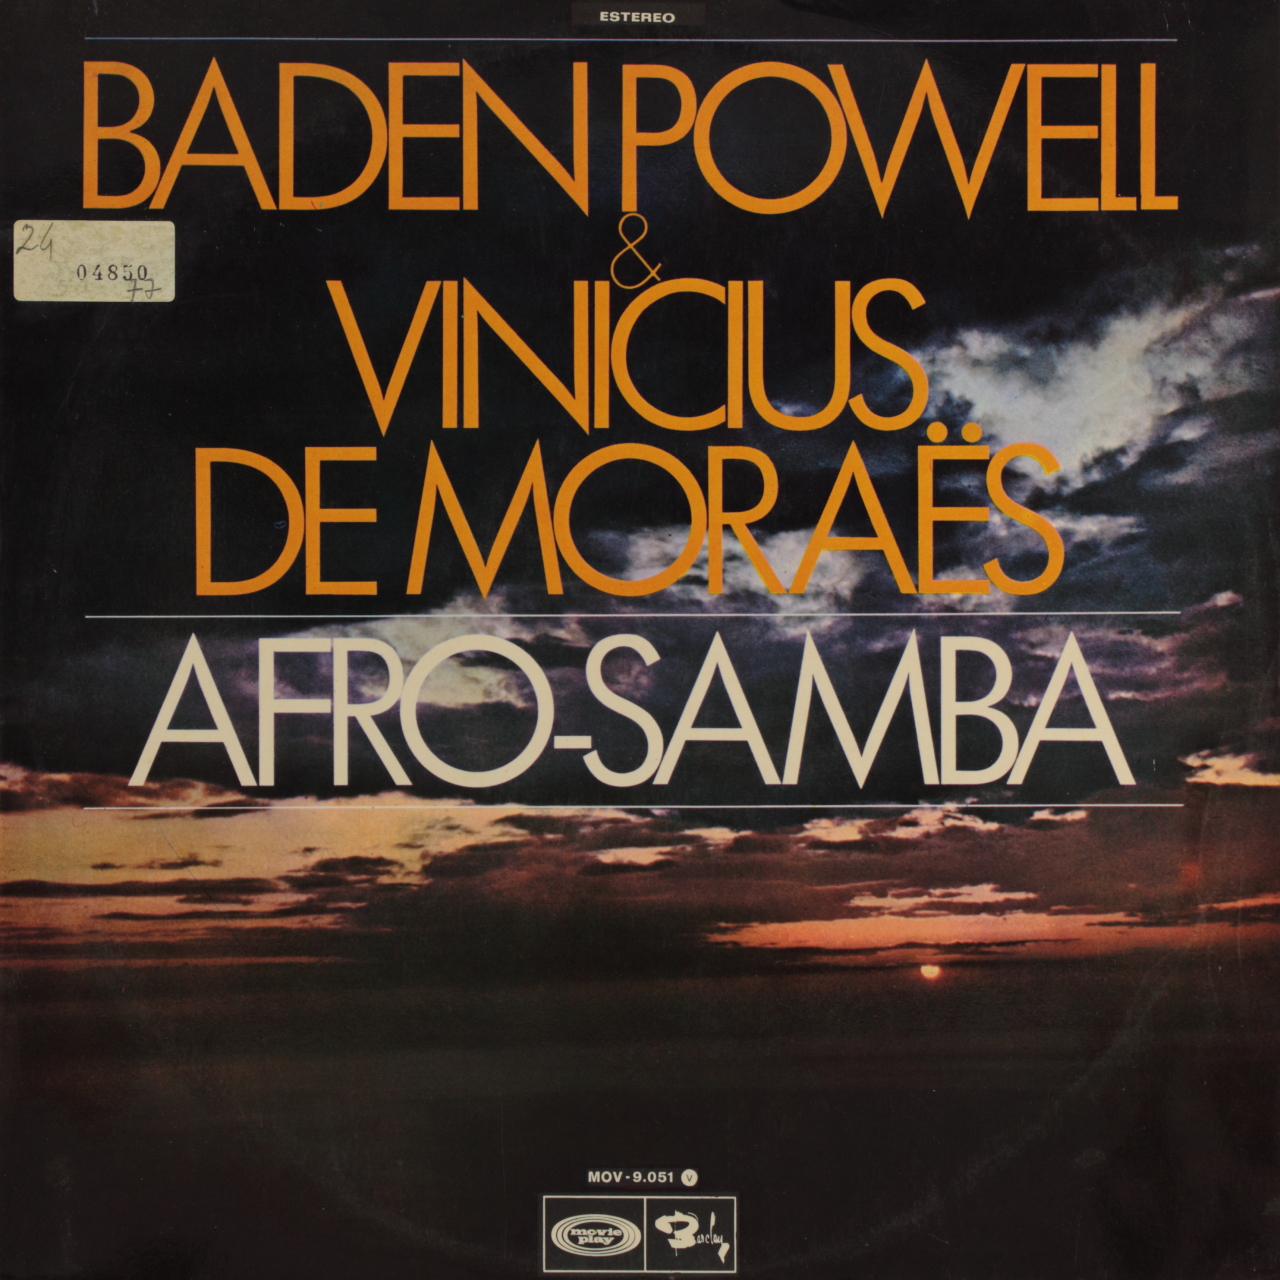 Os Afro Sambas